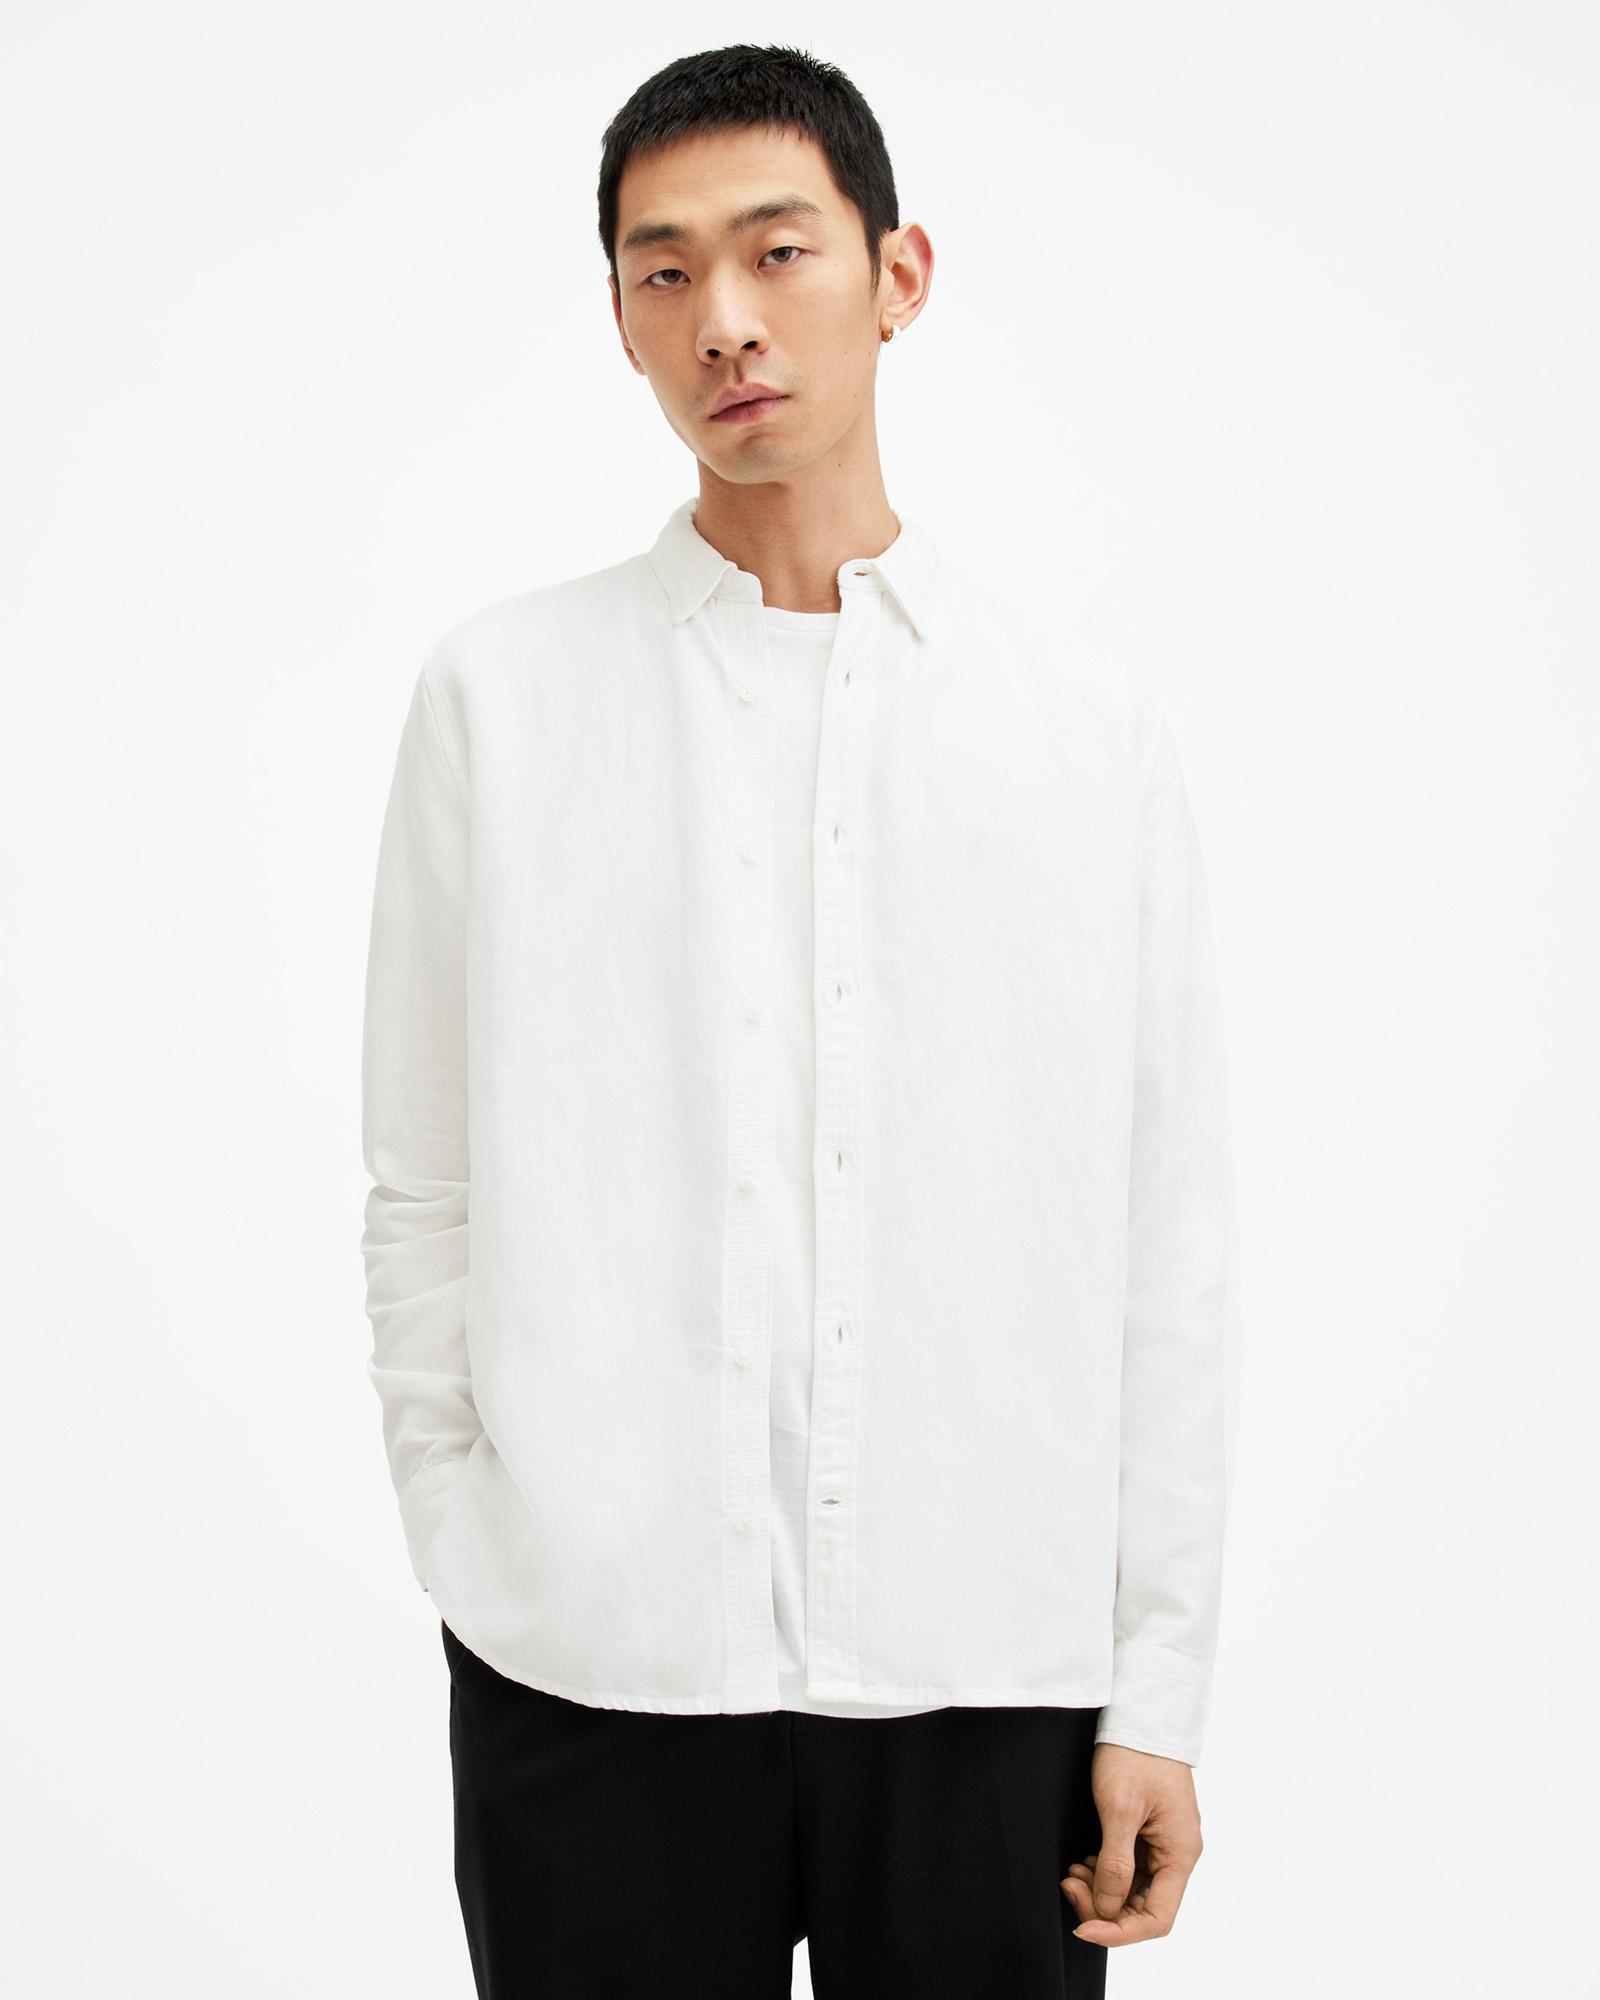 AllSaints Laguna Linen Blend Relaxed Fit Shirt,, White